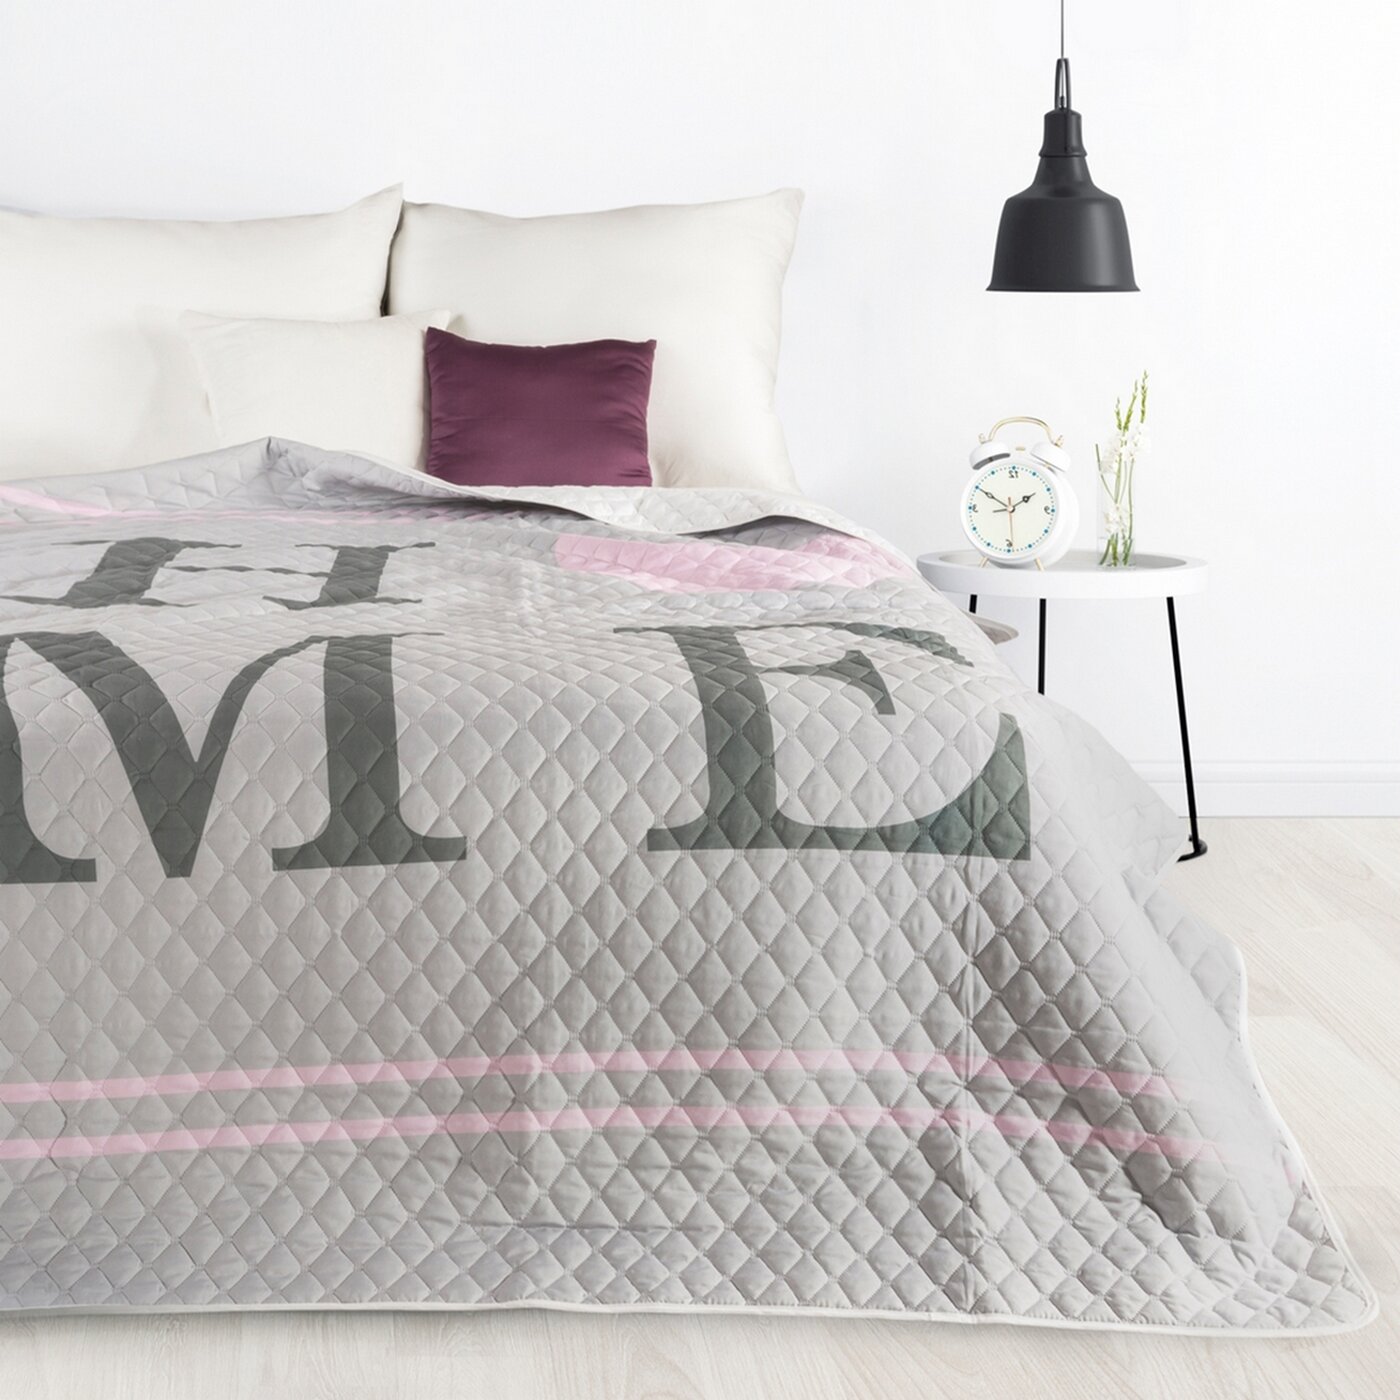 Cuvertură de pat matlasata presa la cald cu inscriptia HOME roz ADESA Perdele de Poveste